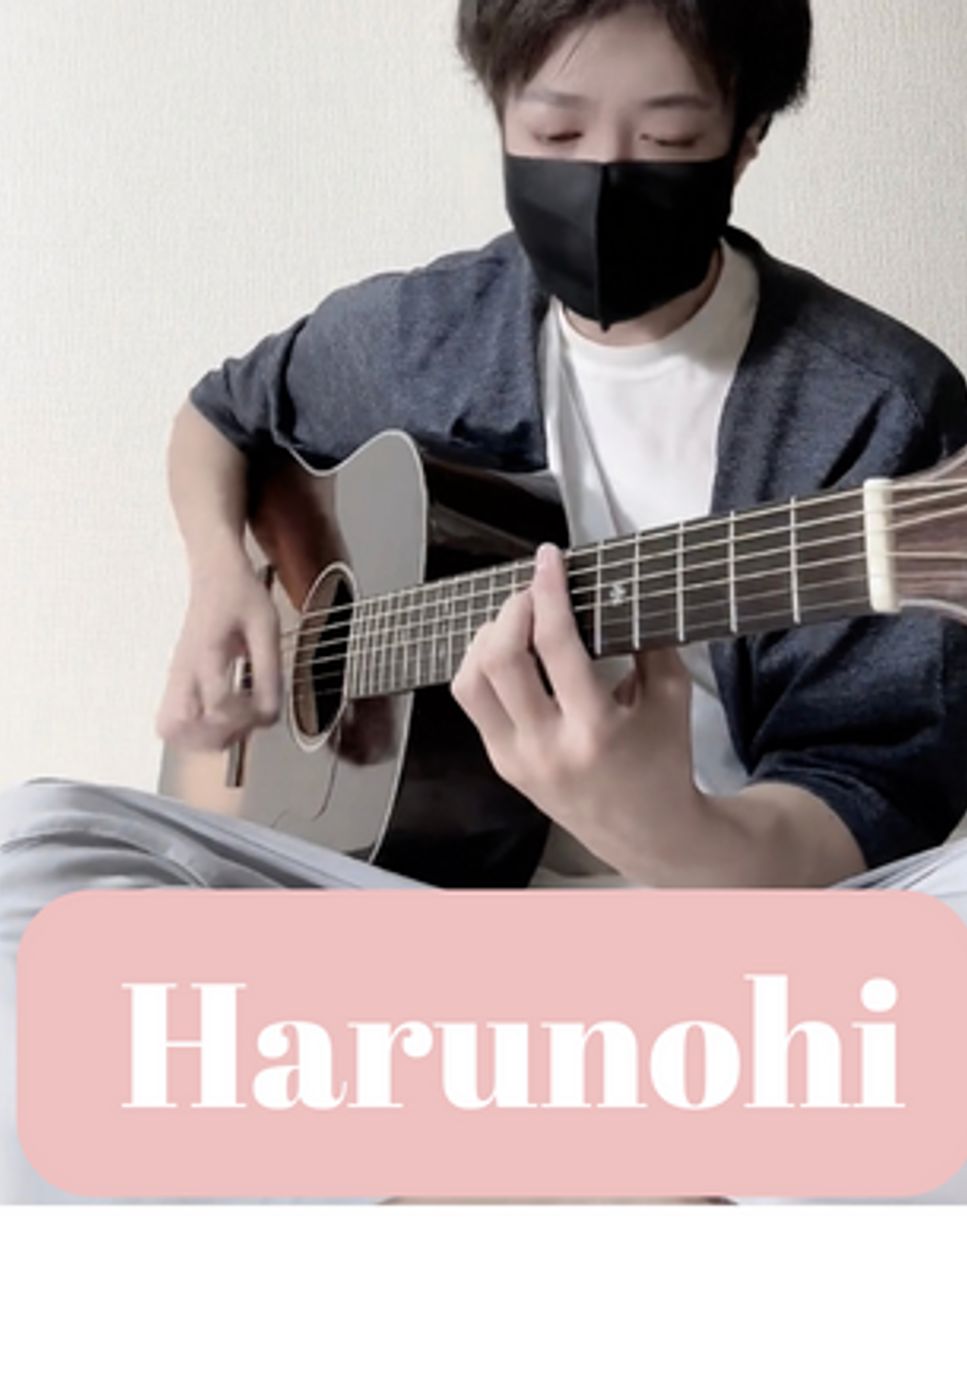 あいみょん - ハルノヒ (ソロギター) by 店長